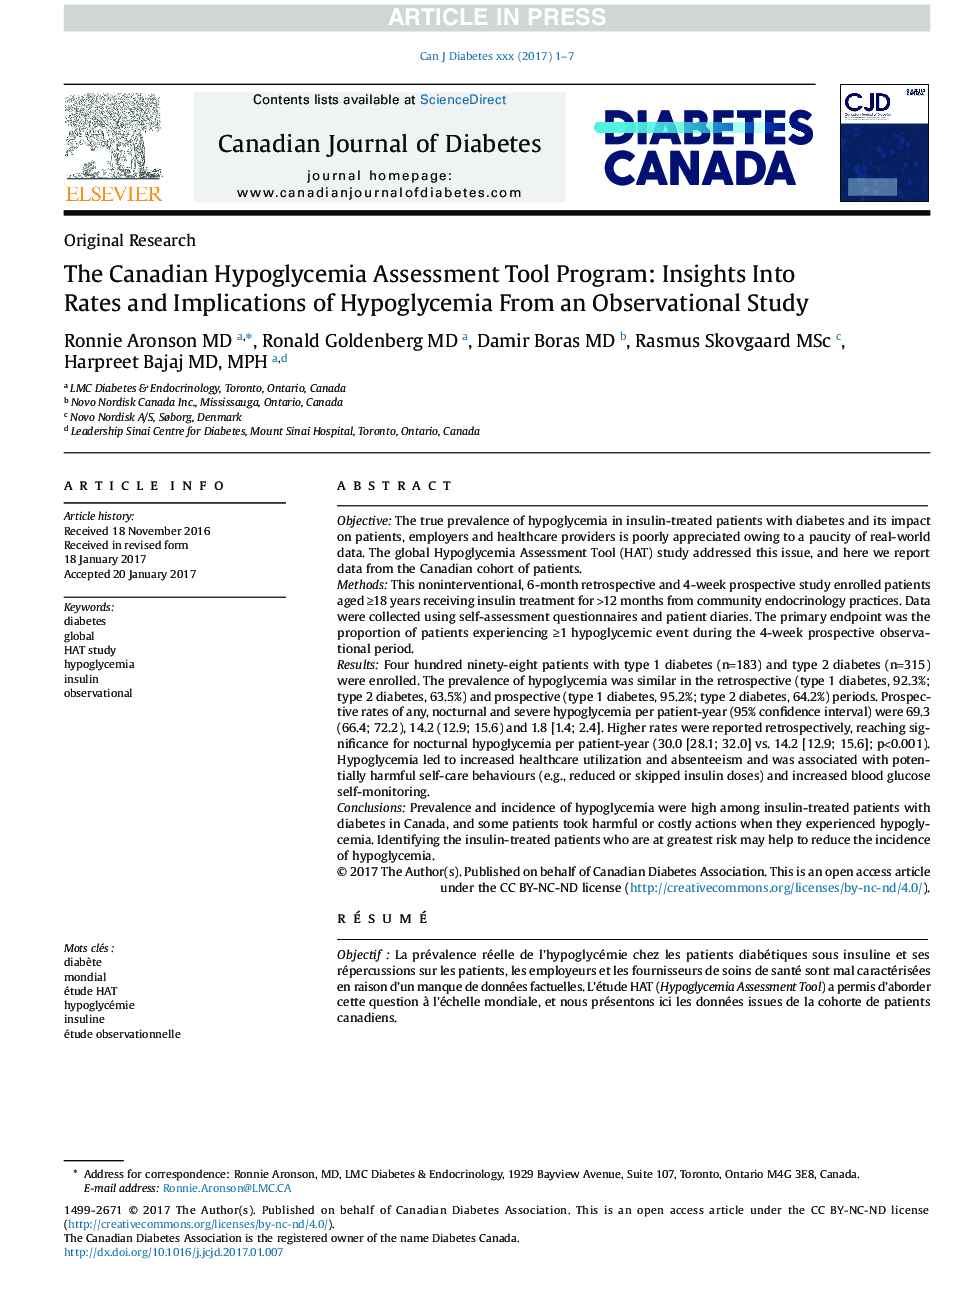 برنامه ابزار ارزیابی هیپوگلیسمی کانادا: بینش در مورد میزان و پیامدهای هیپوگلیسمی از یک مطالعه مشاهداتی 